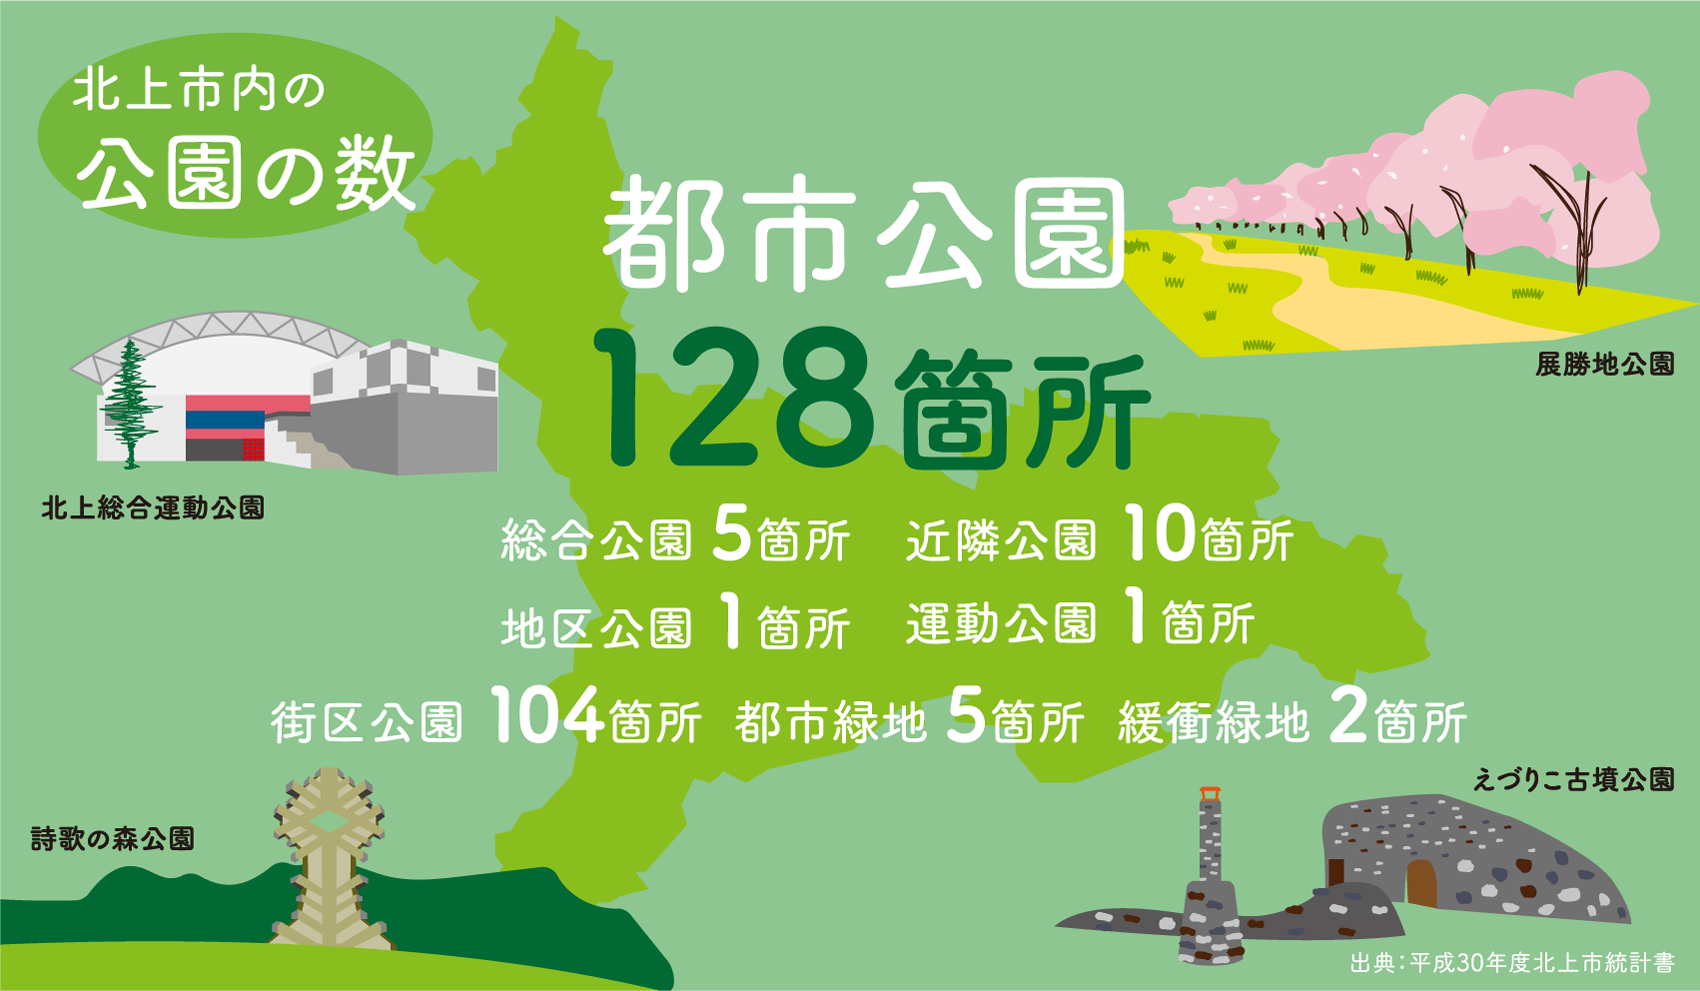 北上市内の公園の数